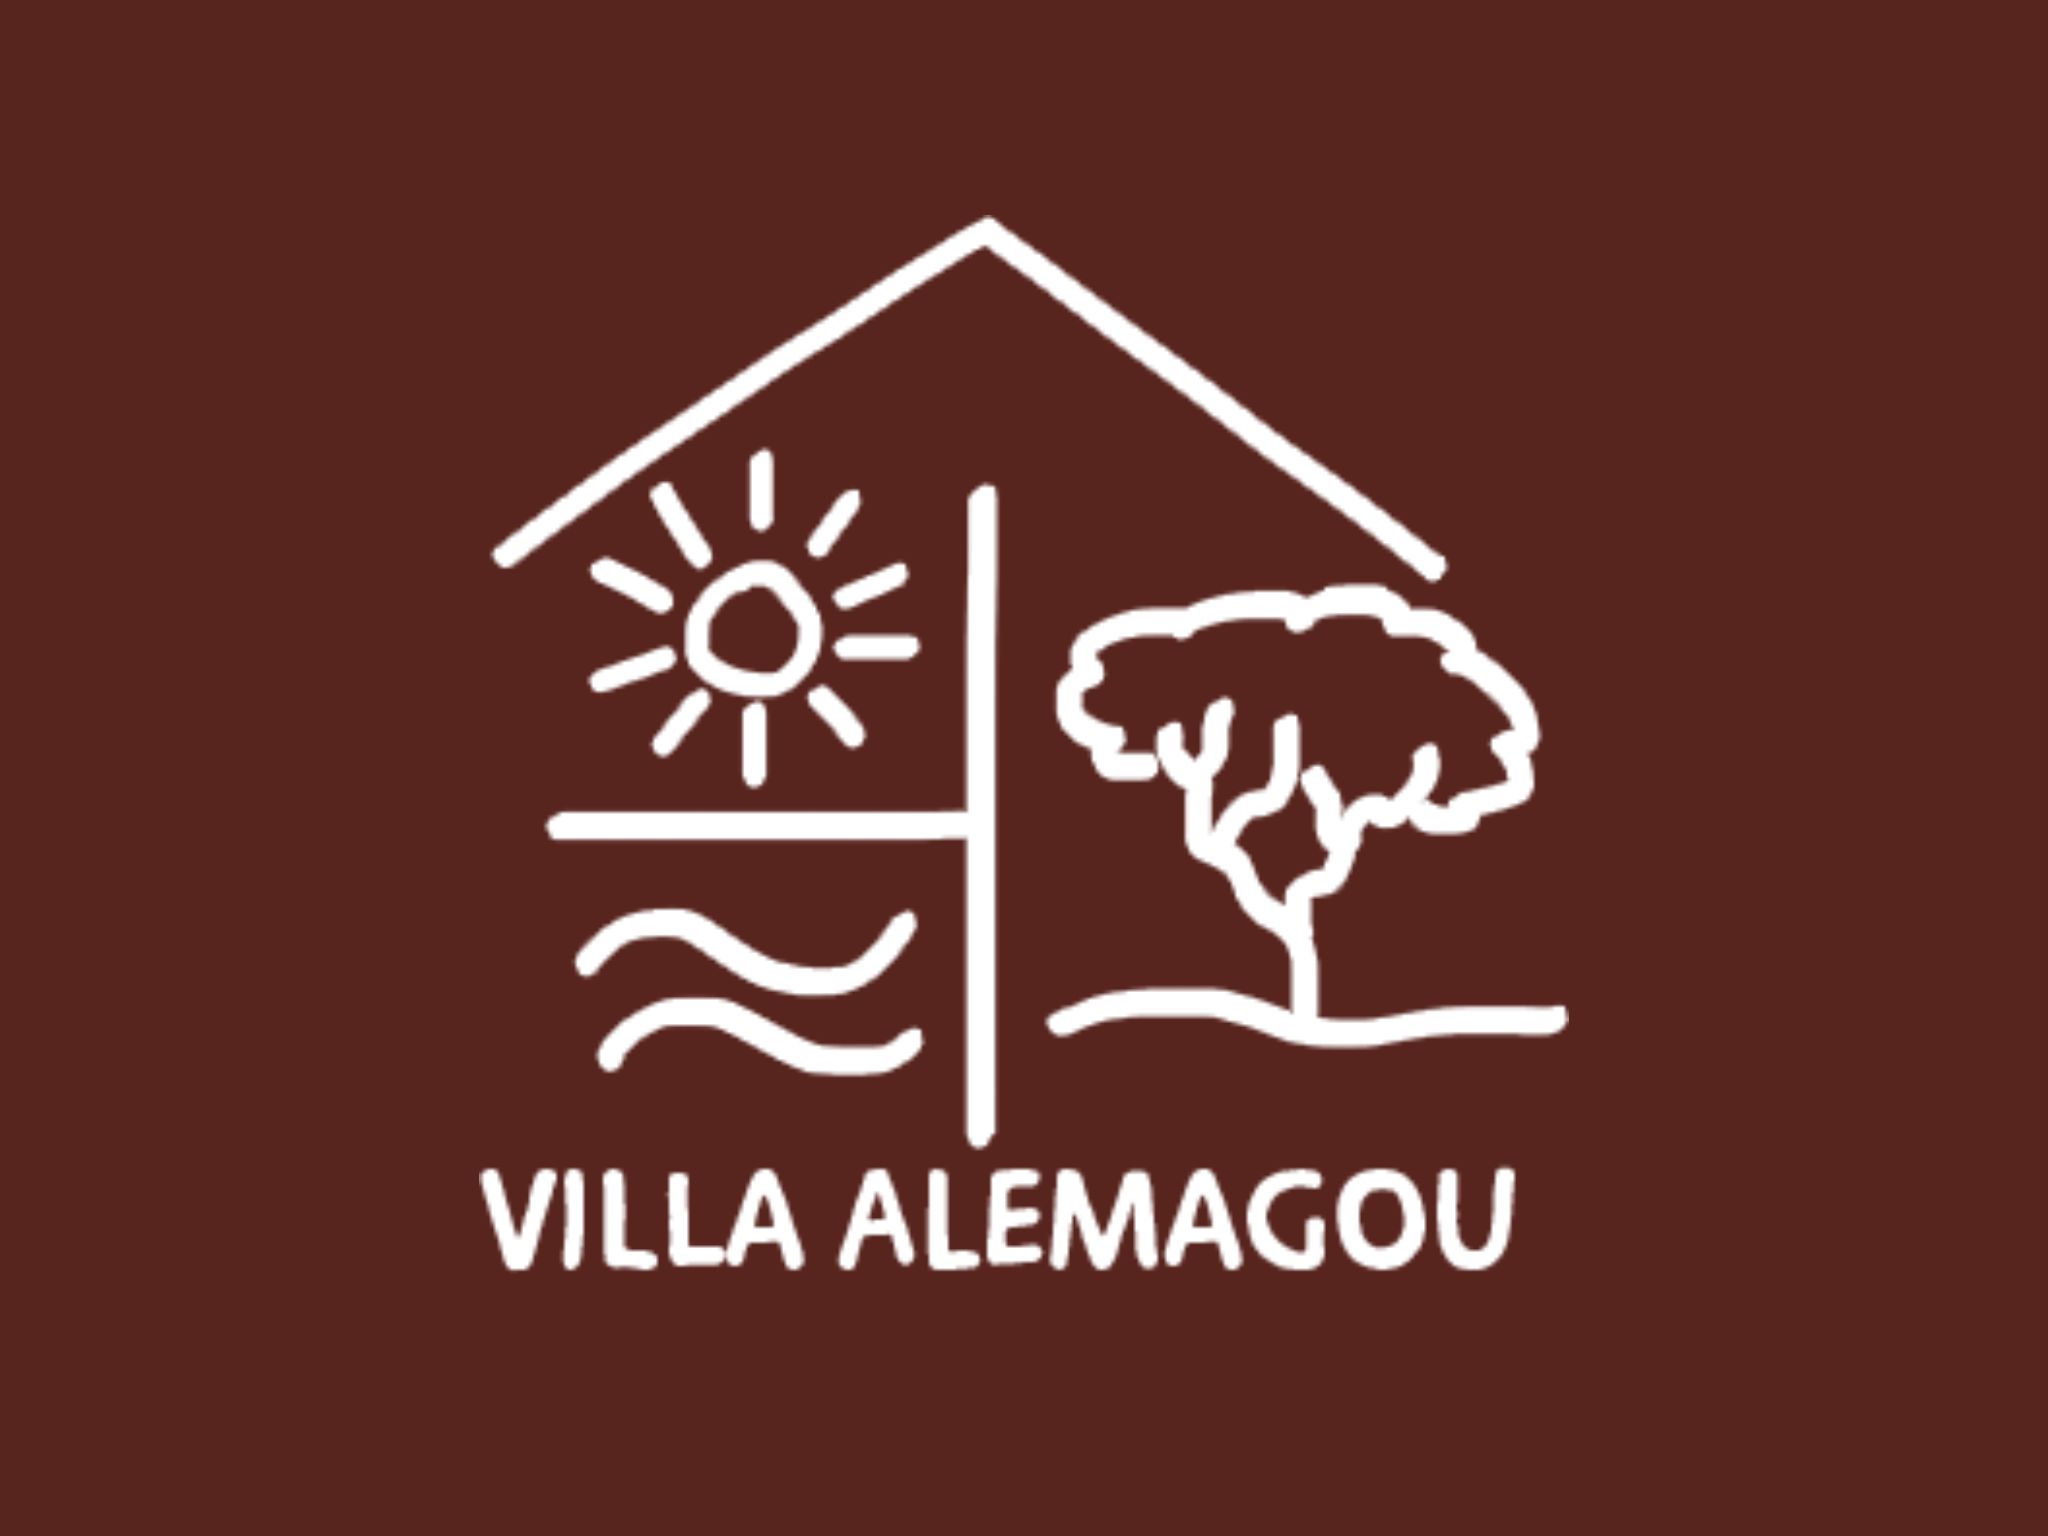  Logo Villa Alemagou 3